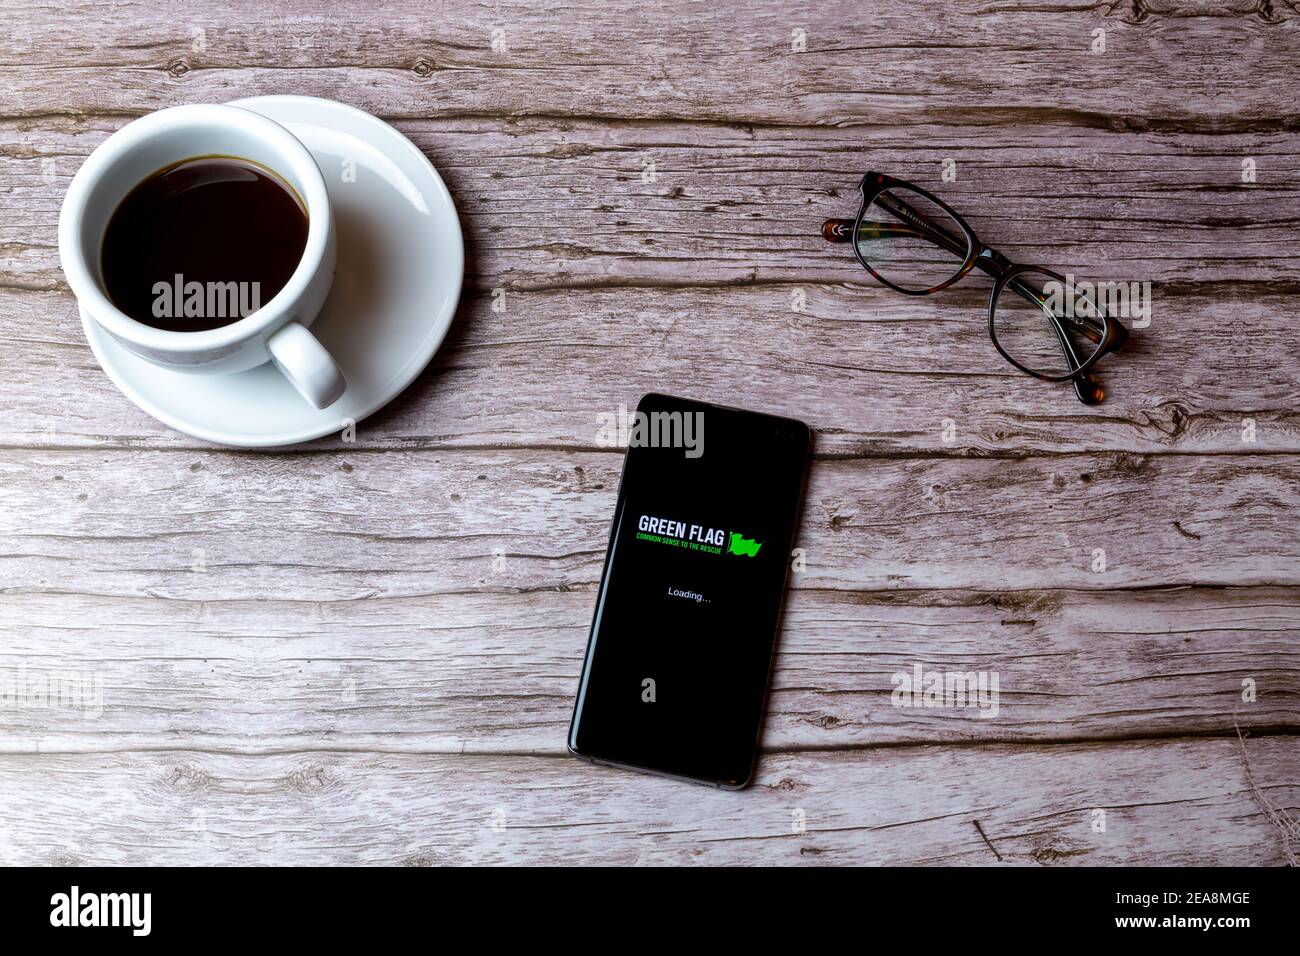 Ein Handy oder Handy auf einem Holz gelegt Tabelle mit der Green Flag Auto Pannenhilfe App öffnen weiter Zu einem Kaffee Stockfoto